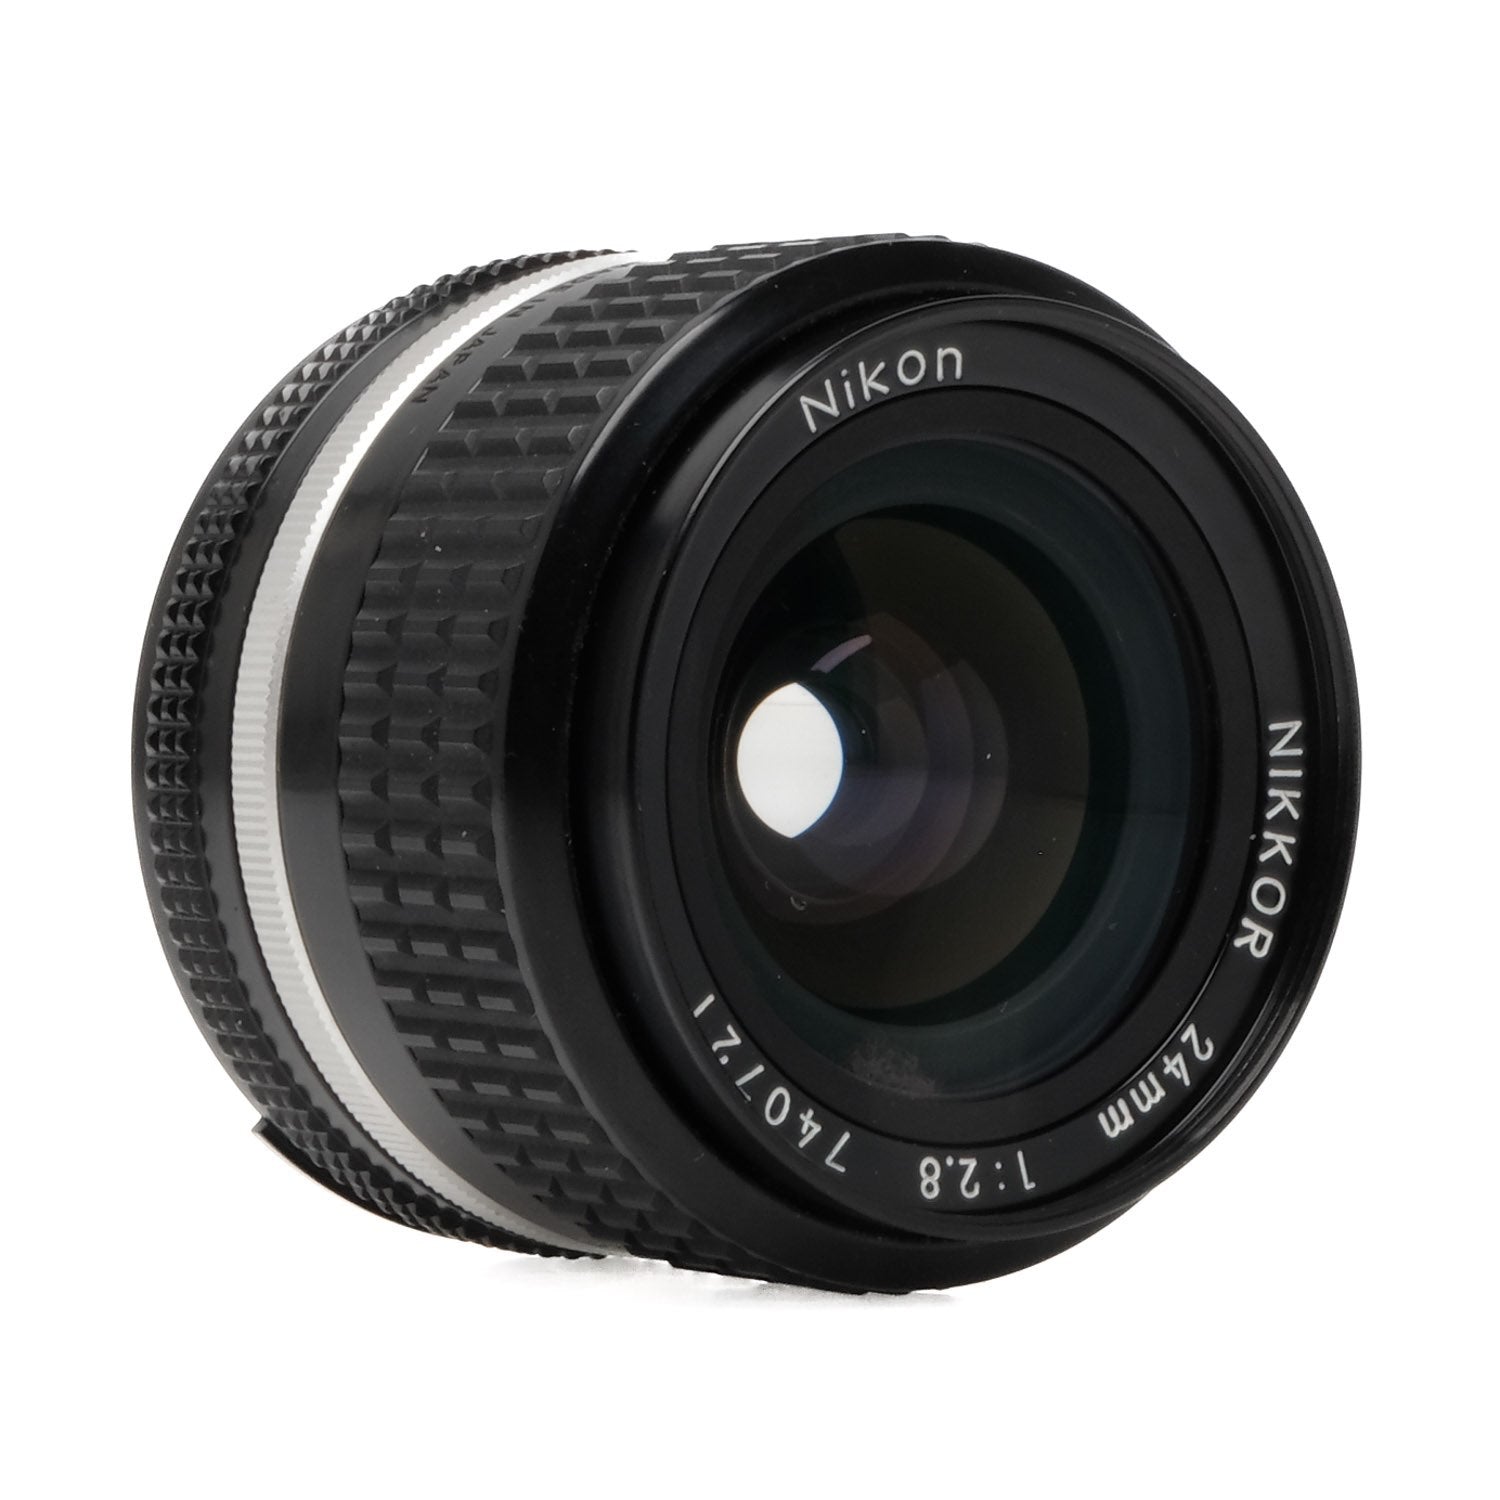 Nikon 24mm f2.8 AI-S 740721